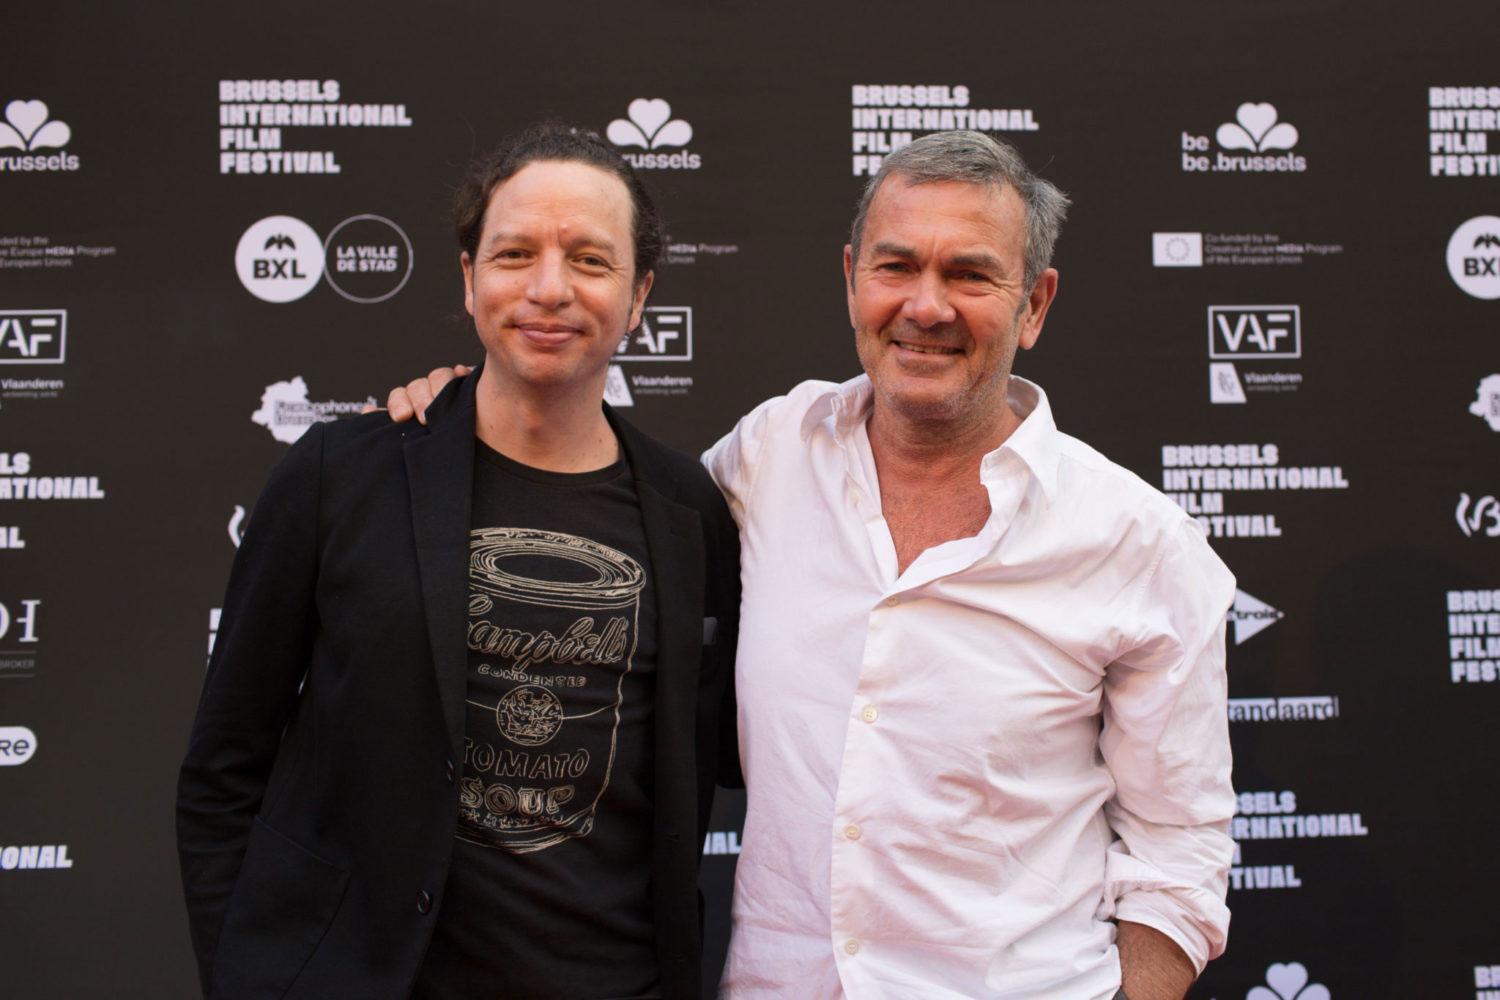 Sundown menang besar di BRIFF Film Festival di Brussels